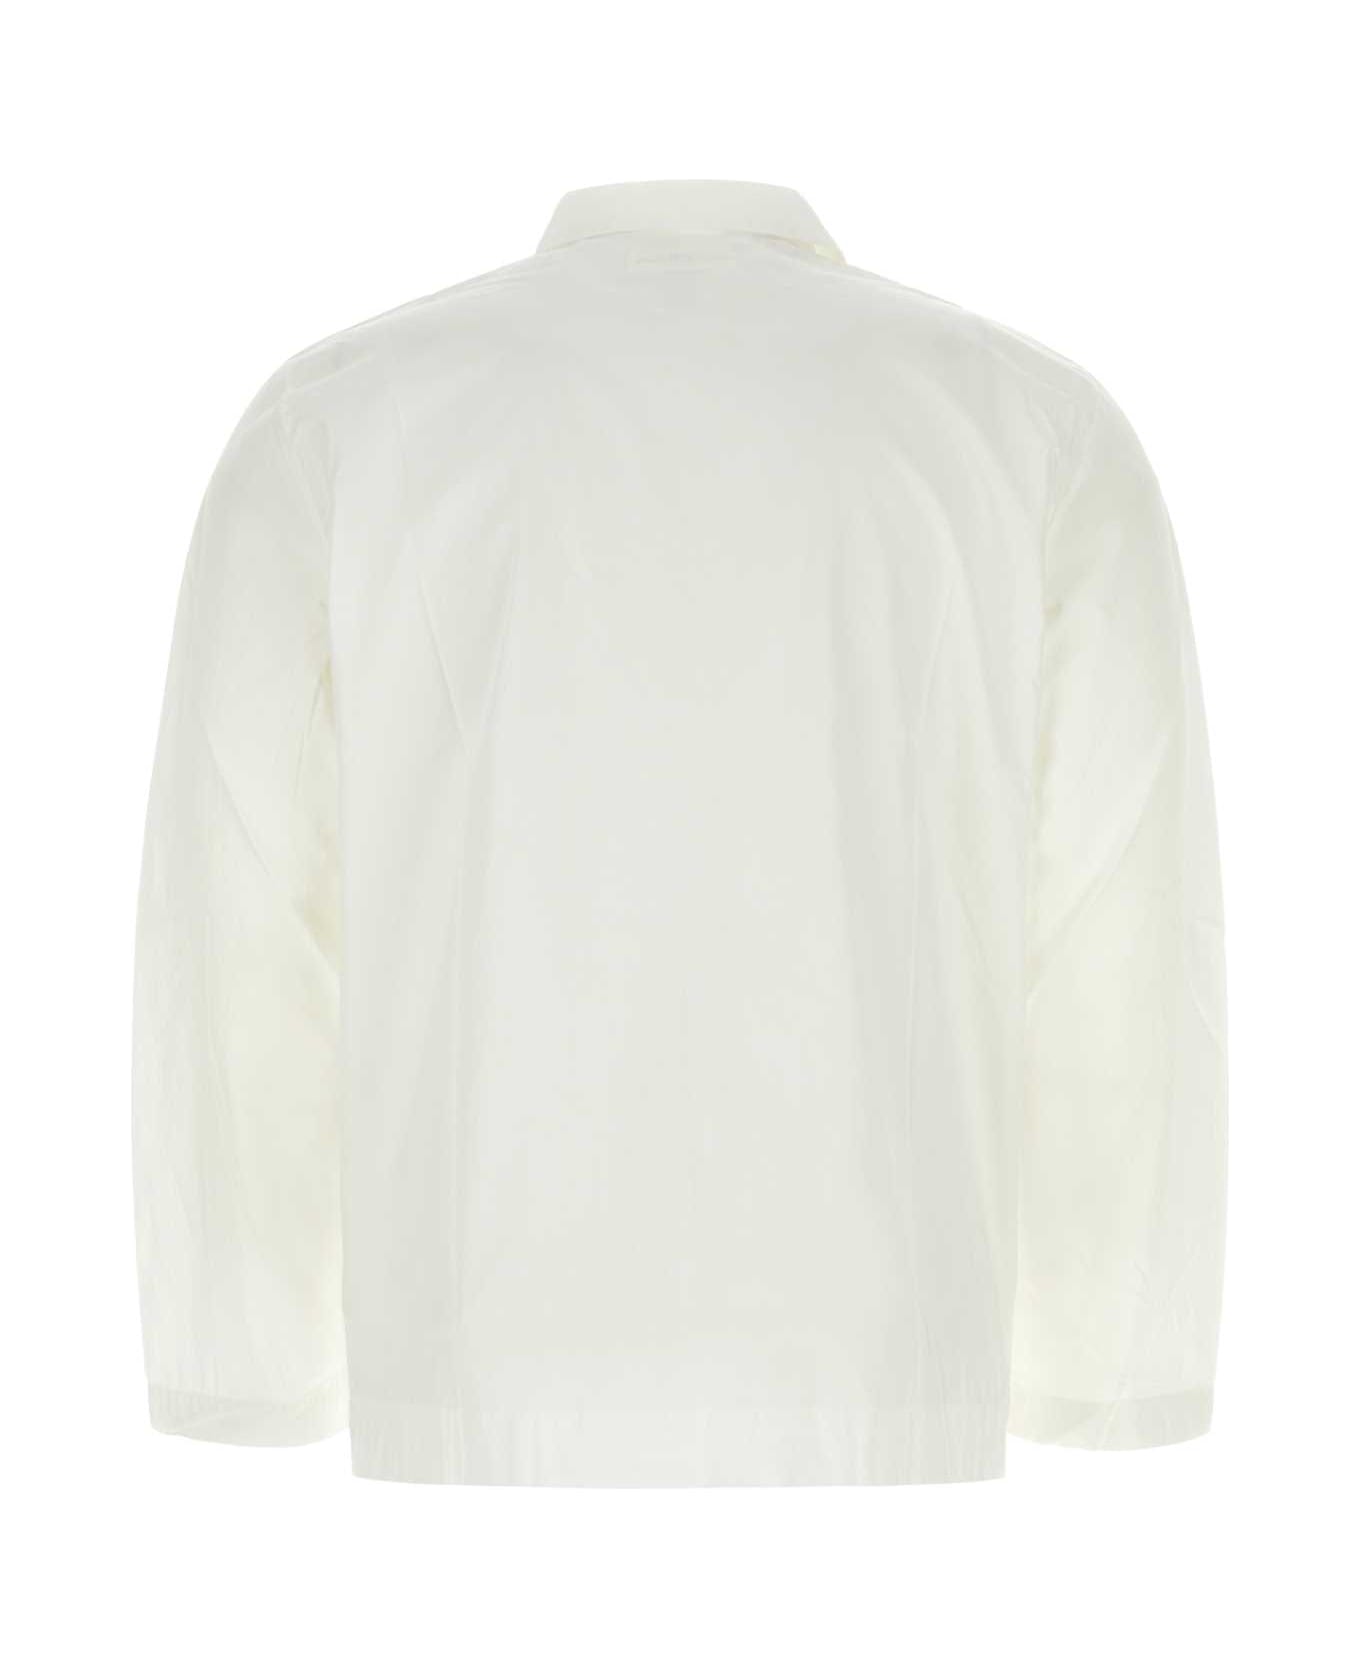 Tekla White Cotton Pyjama Shirt - ALABASTERWHITE